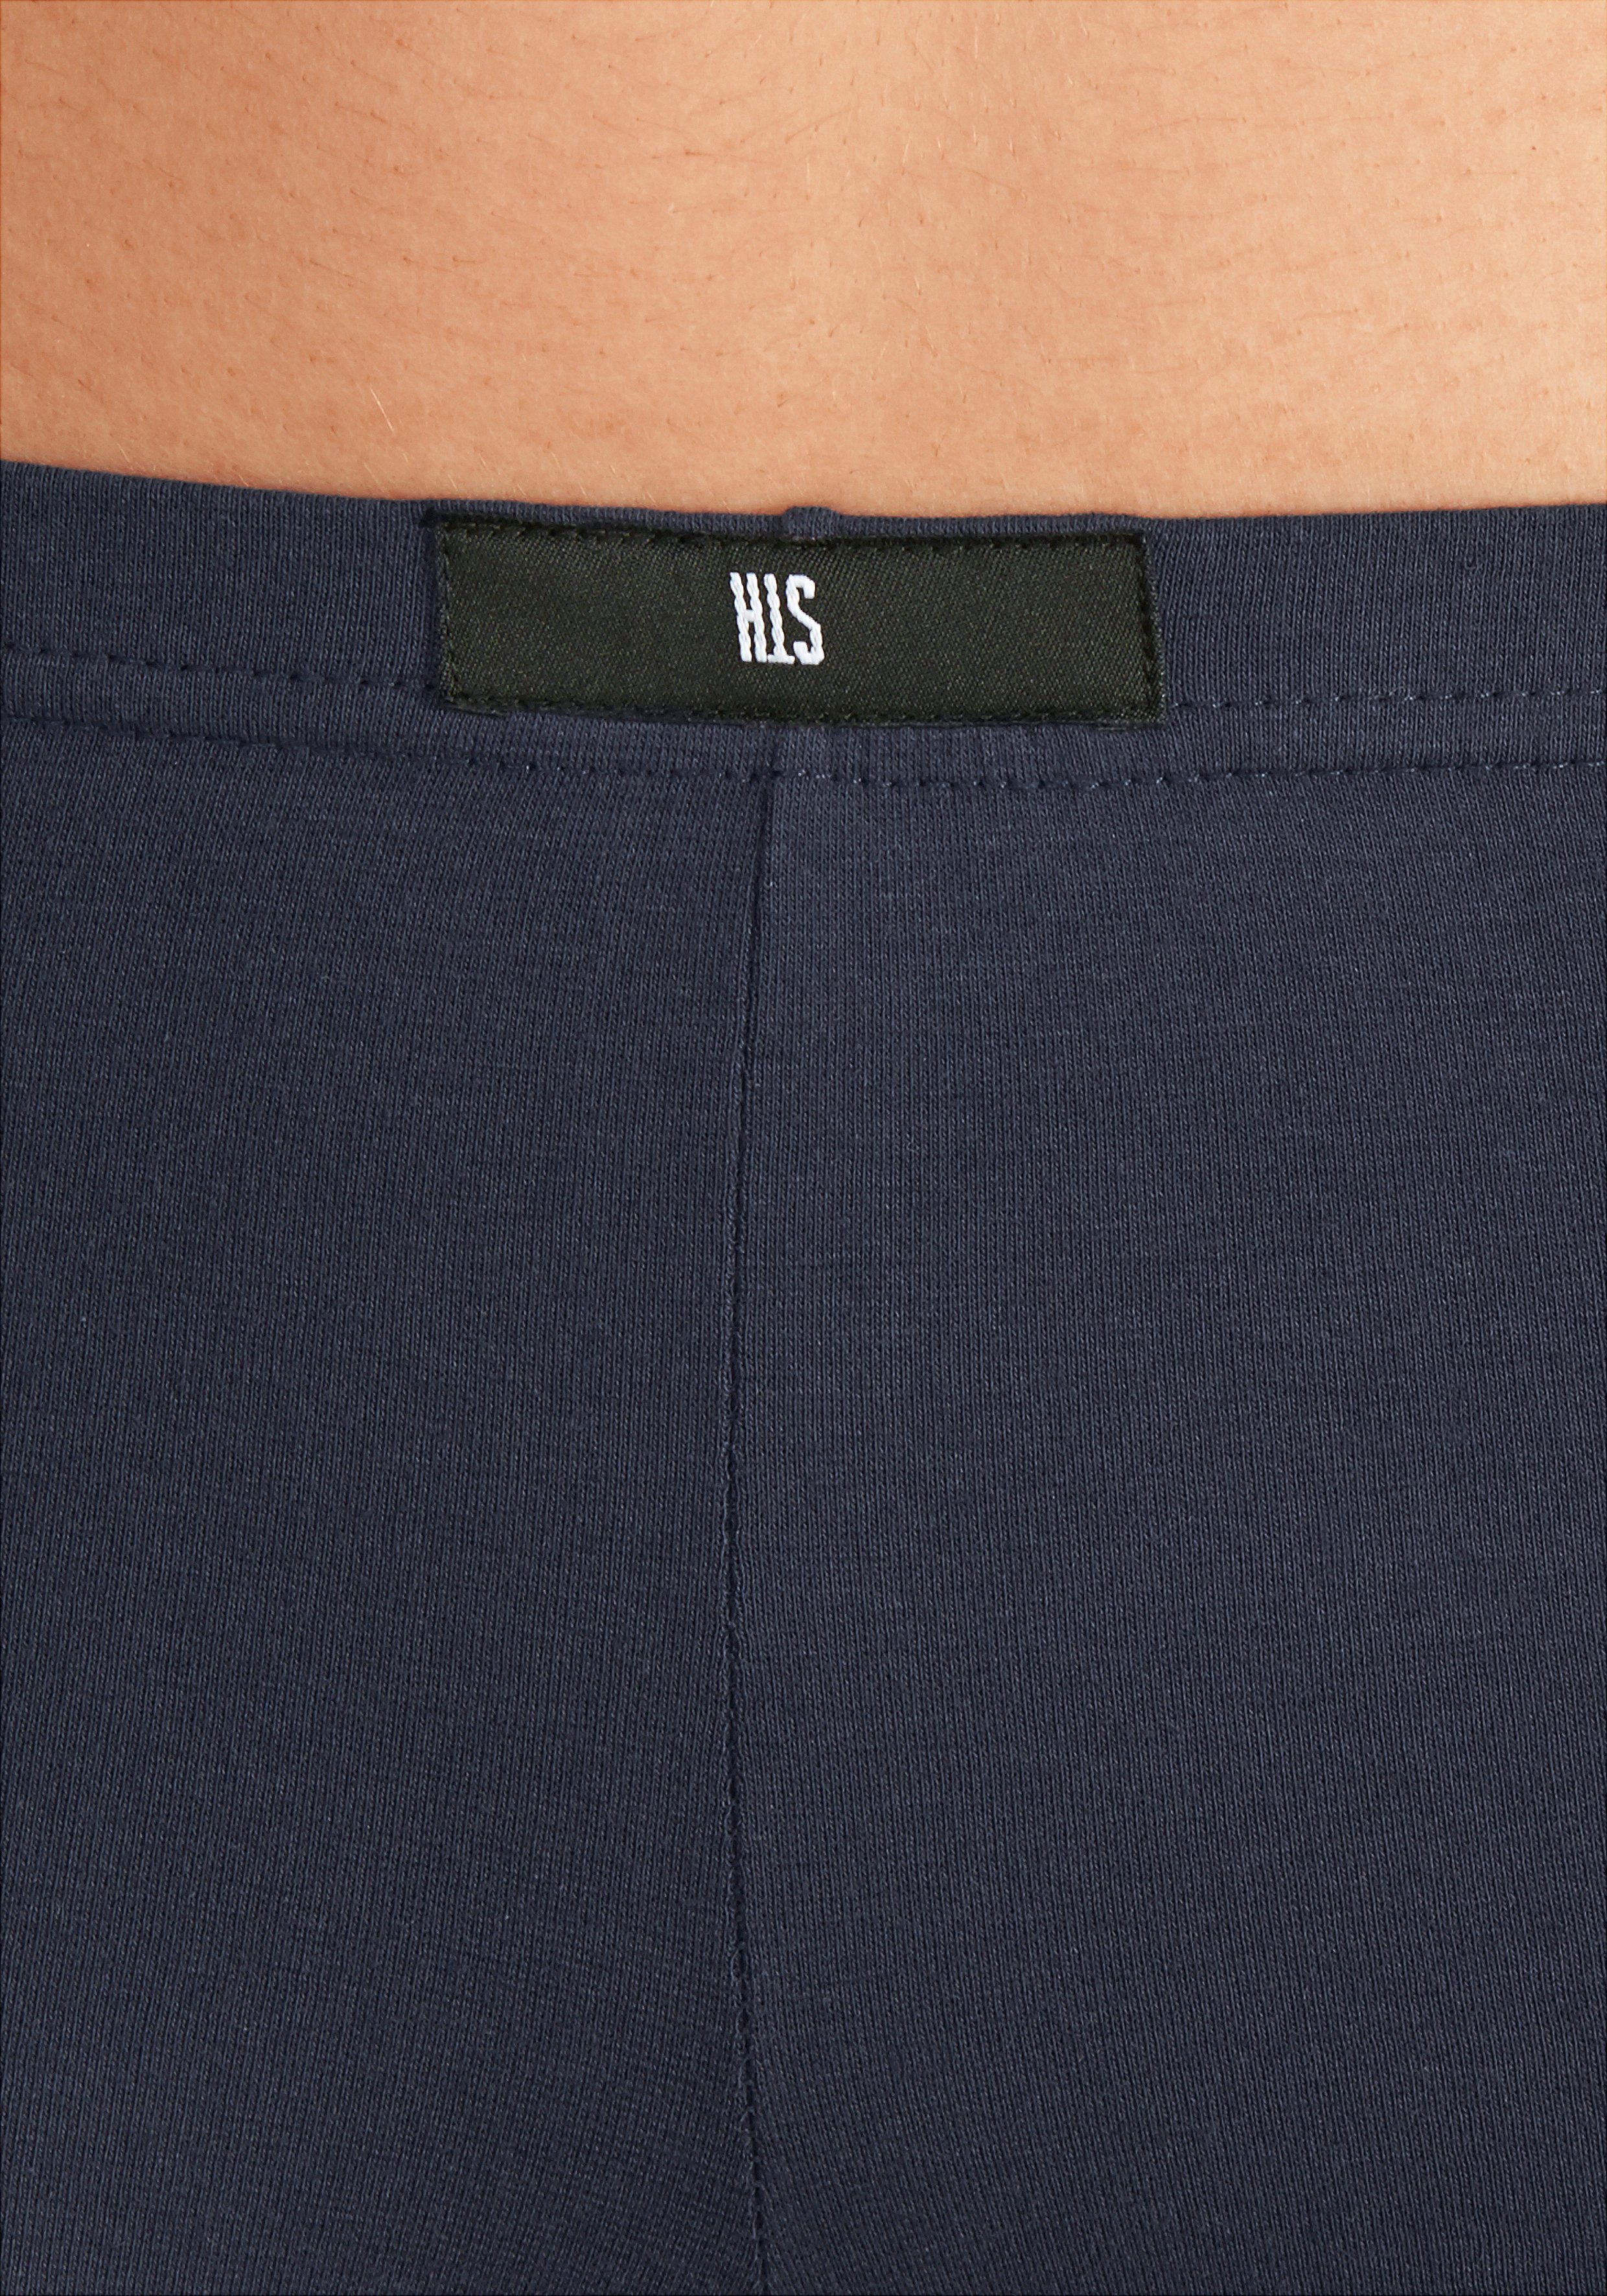 (Packung, 4-St) rot aus elastischer Panty Baumwoll-Qualität blau, H.I.S marine, grau-meliert,